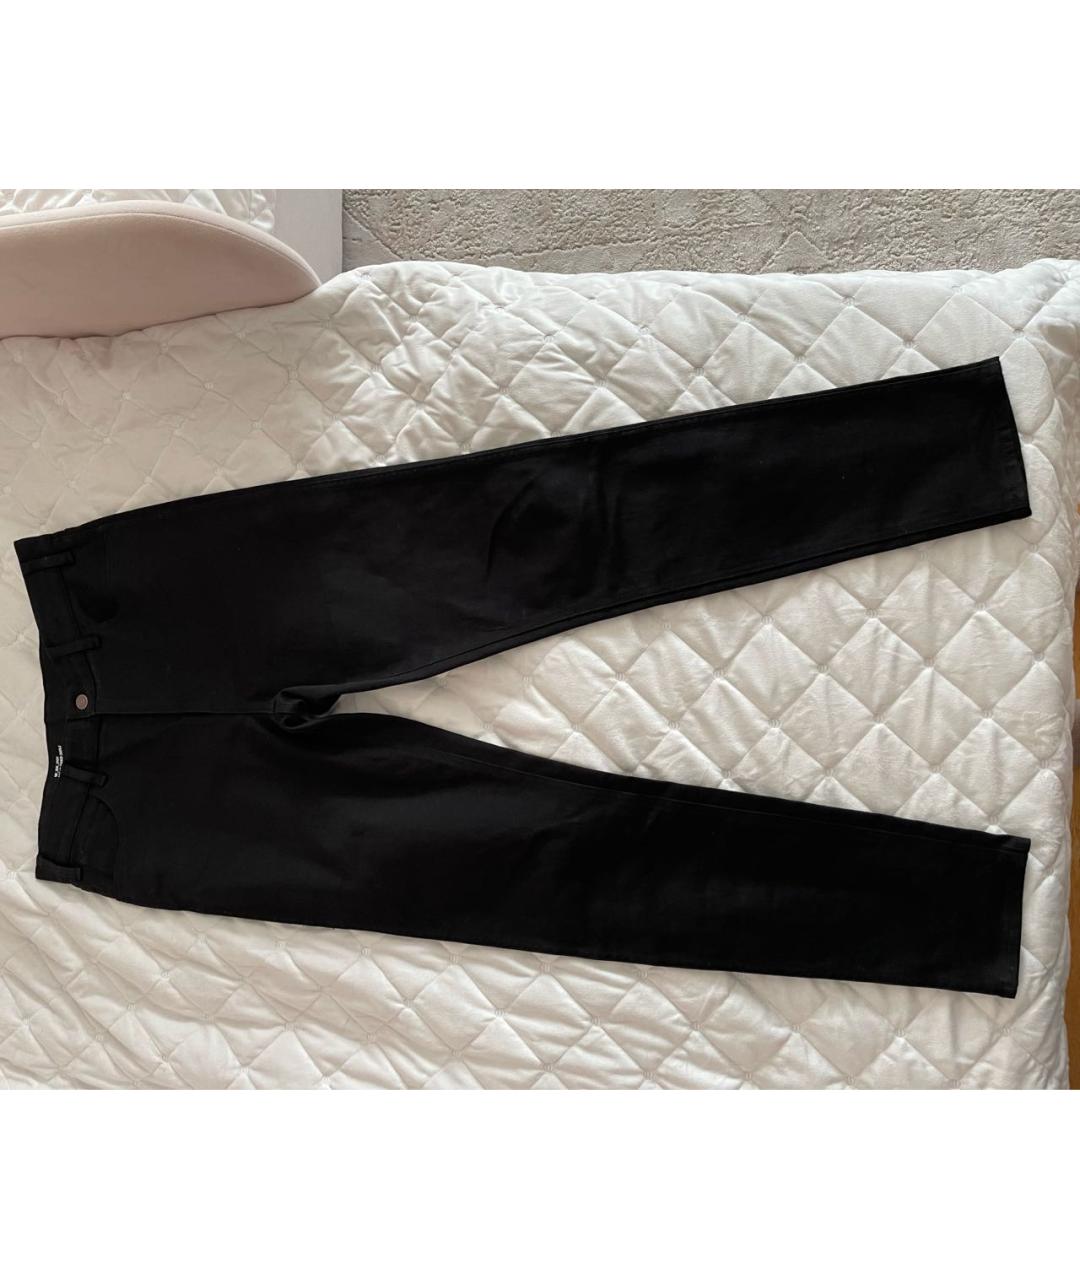 CELINE PRE-OWNED Черные хлопко-эластановые джинсы слим, фото 3